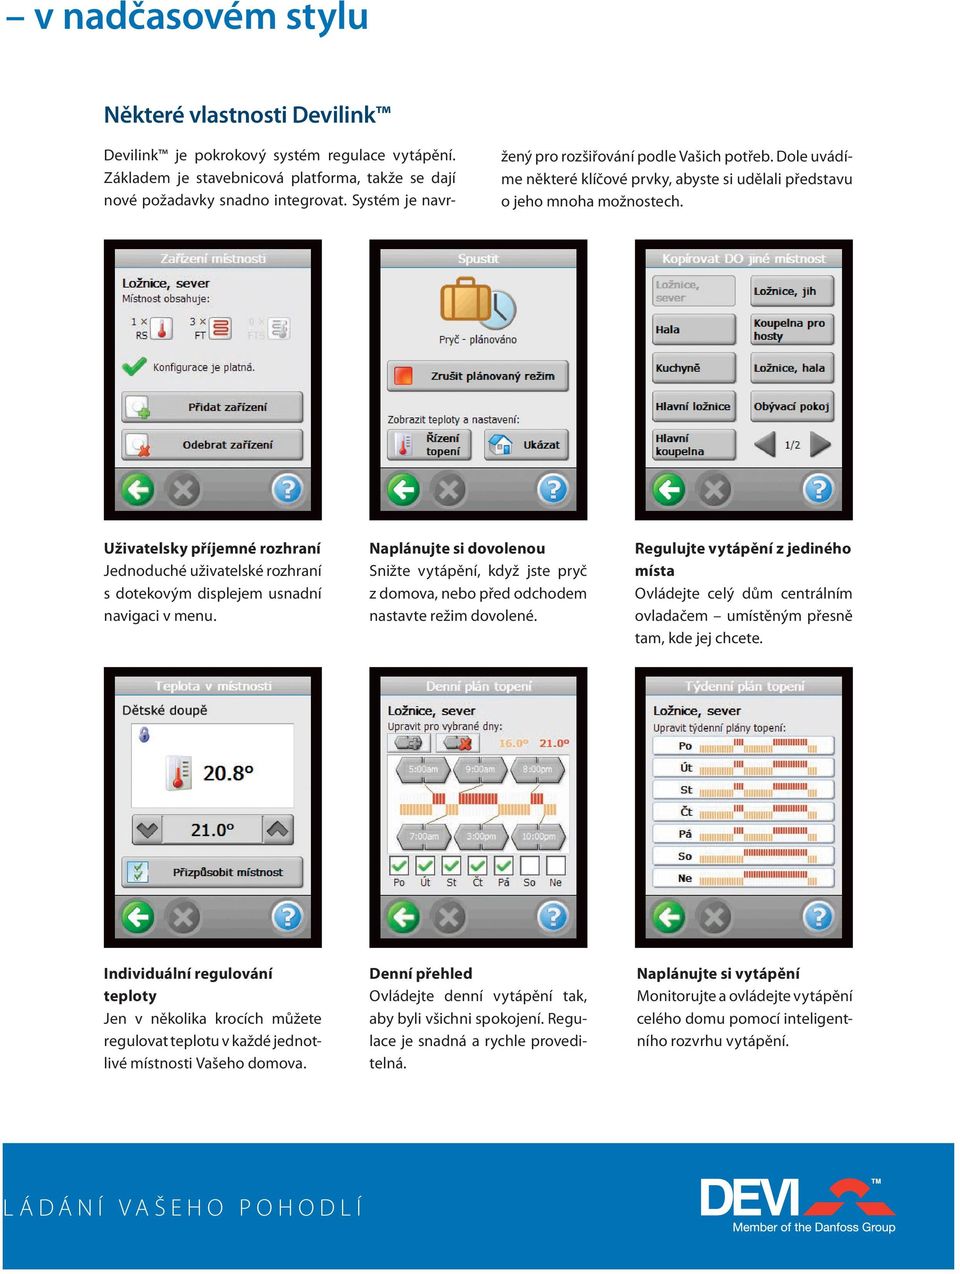 Uživatelsky příjemné rozhraní Jednoduché uživatelské rozhraní s dotekovým displejem usnadní navigaci v menu.